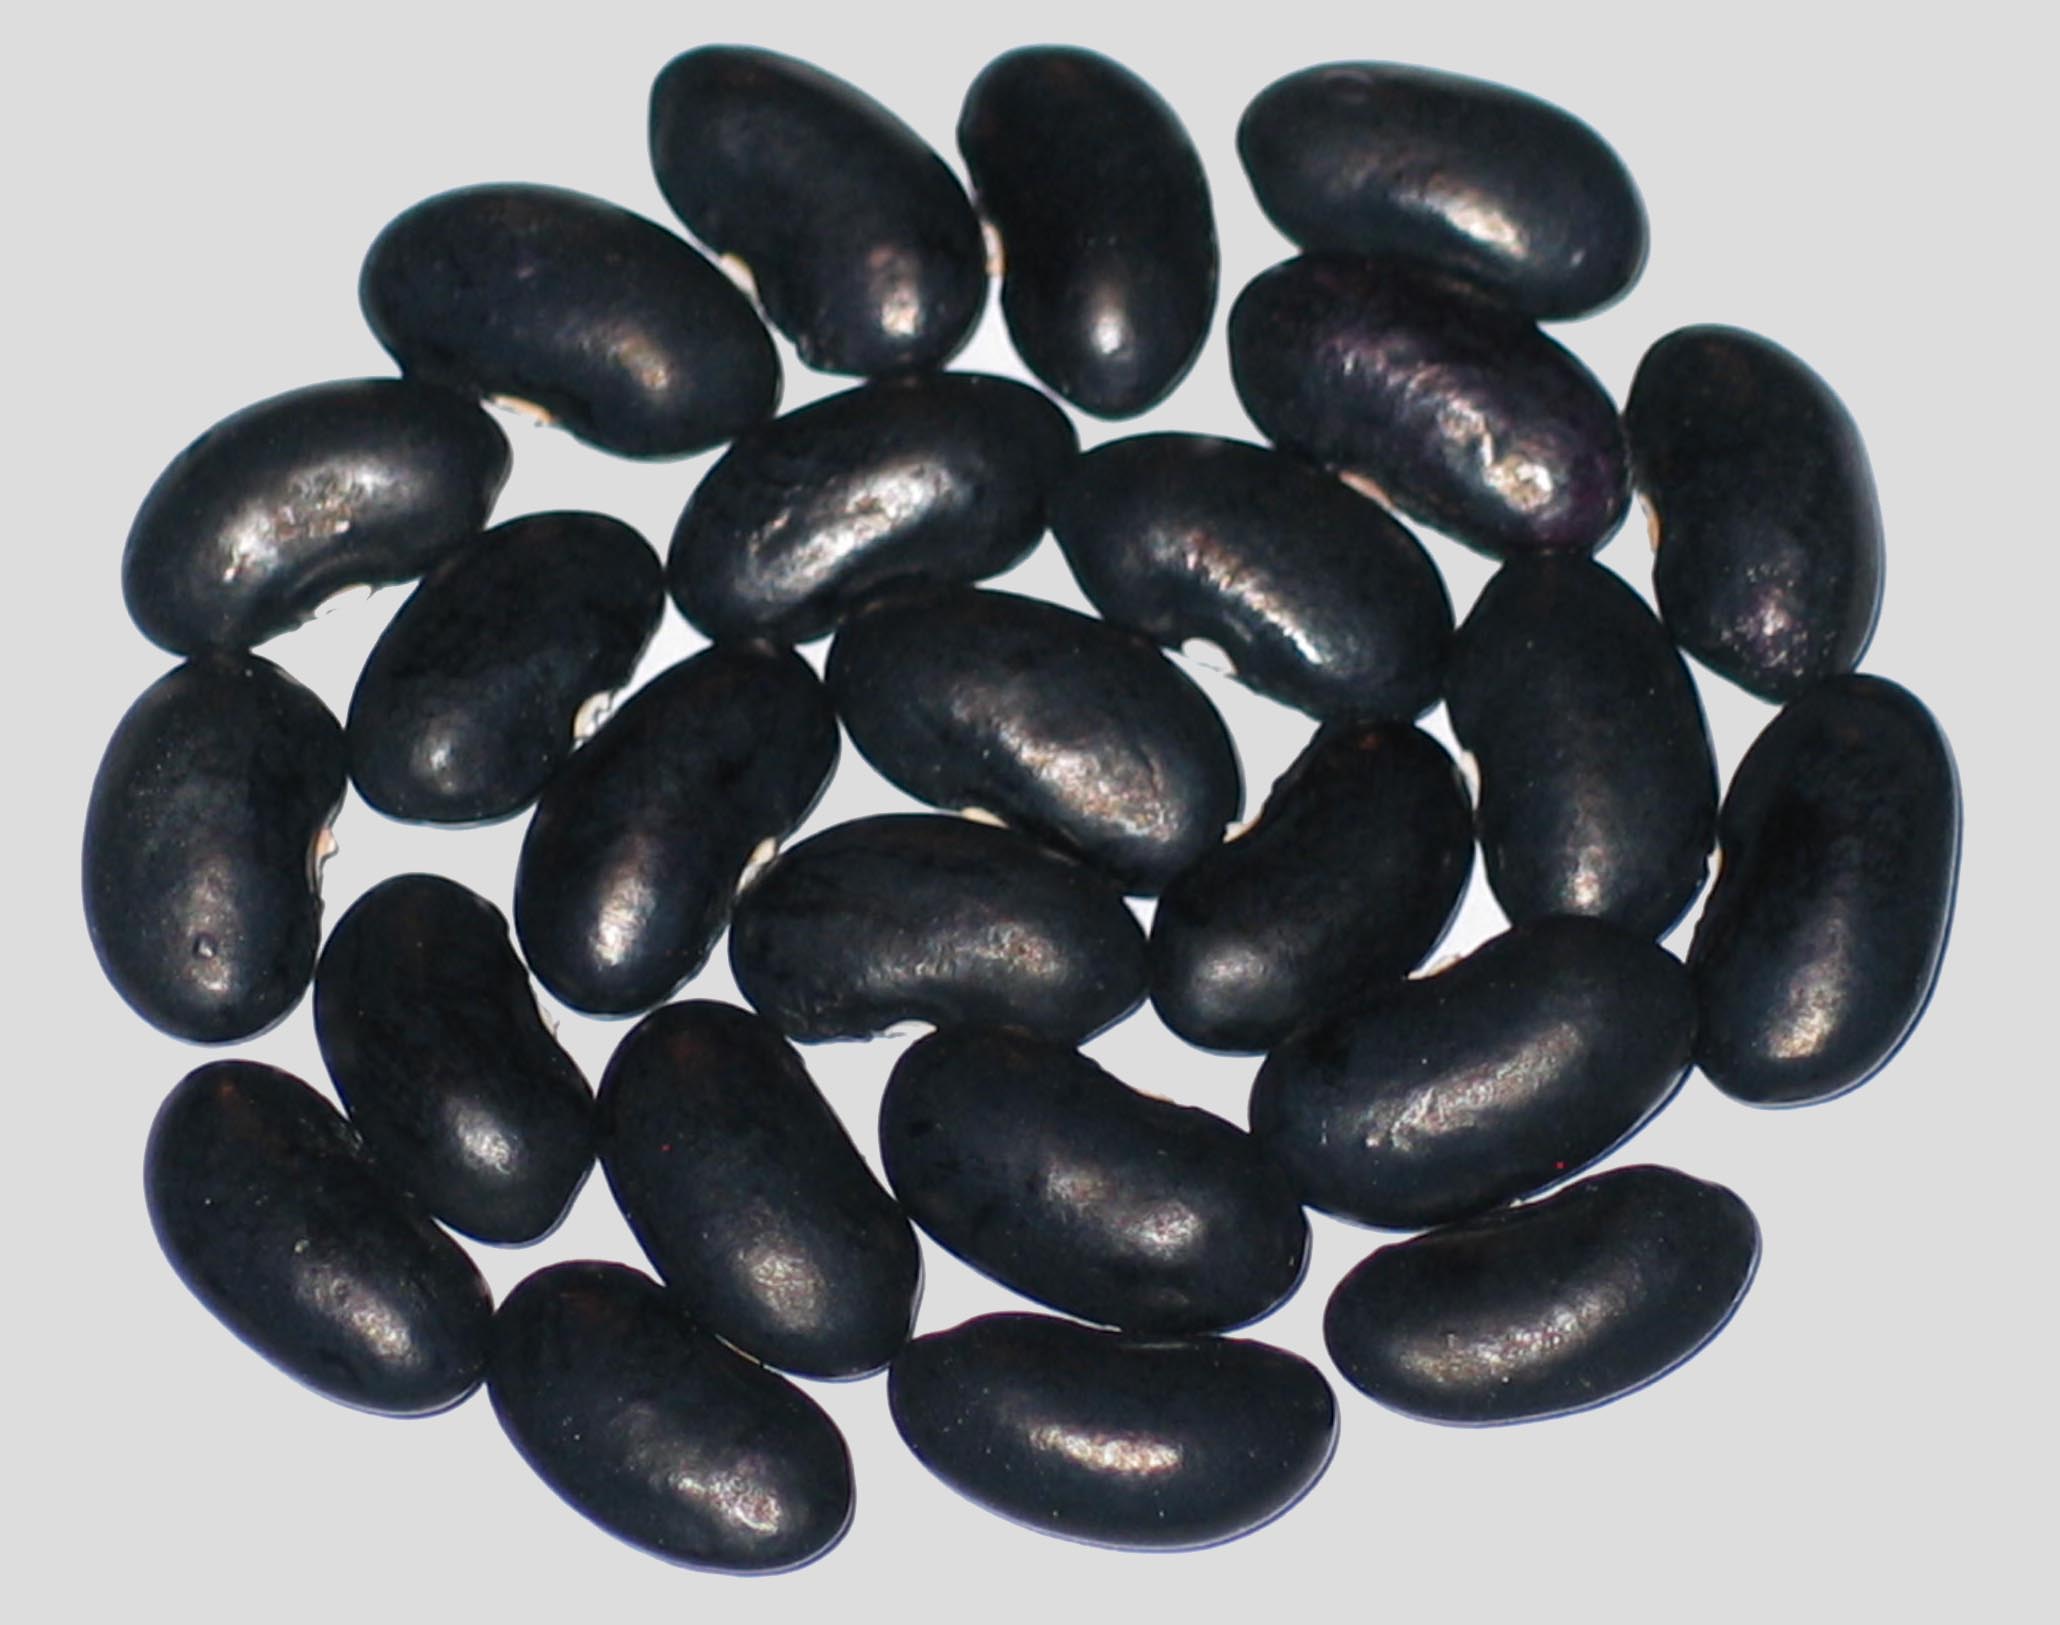 image of Armenian Giant Black beans